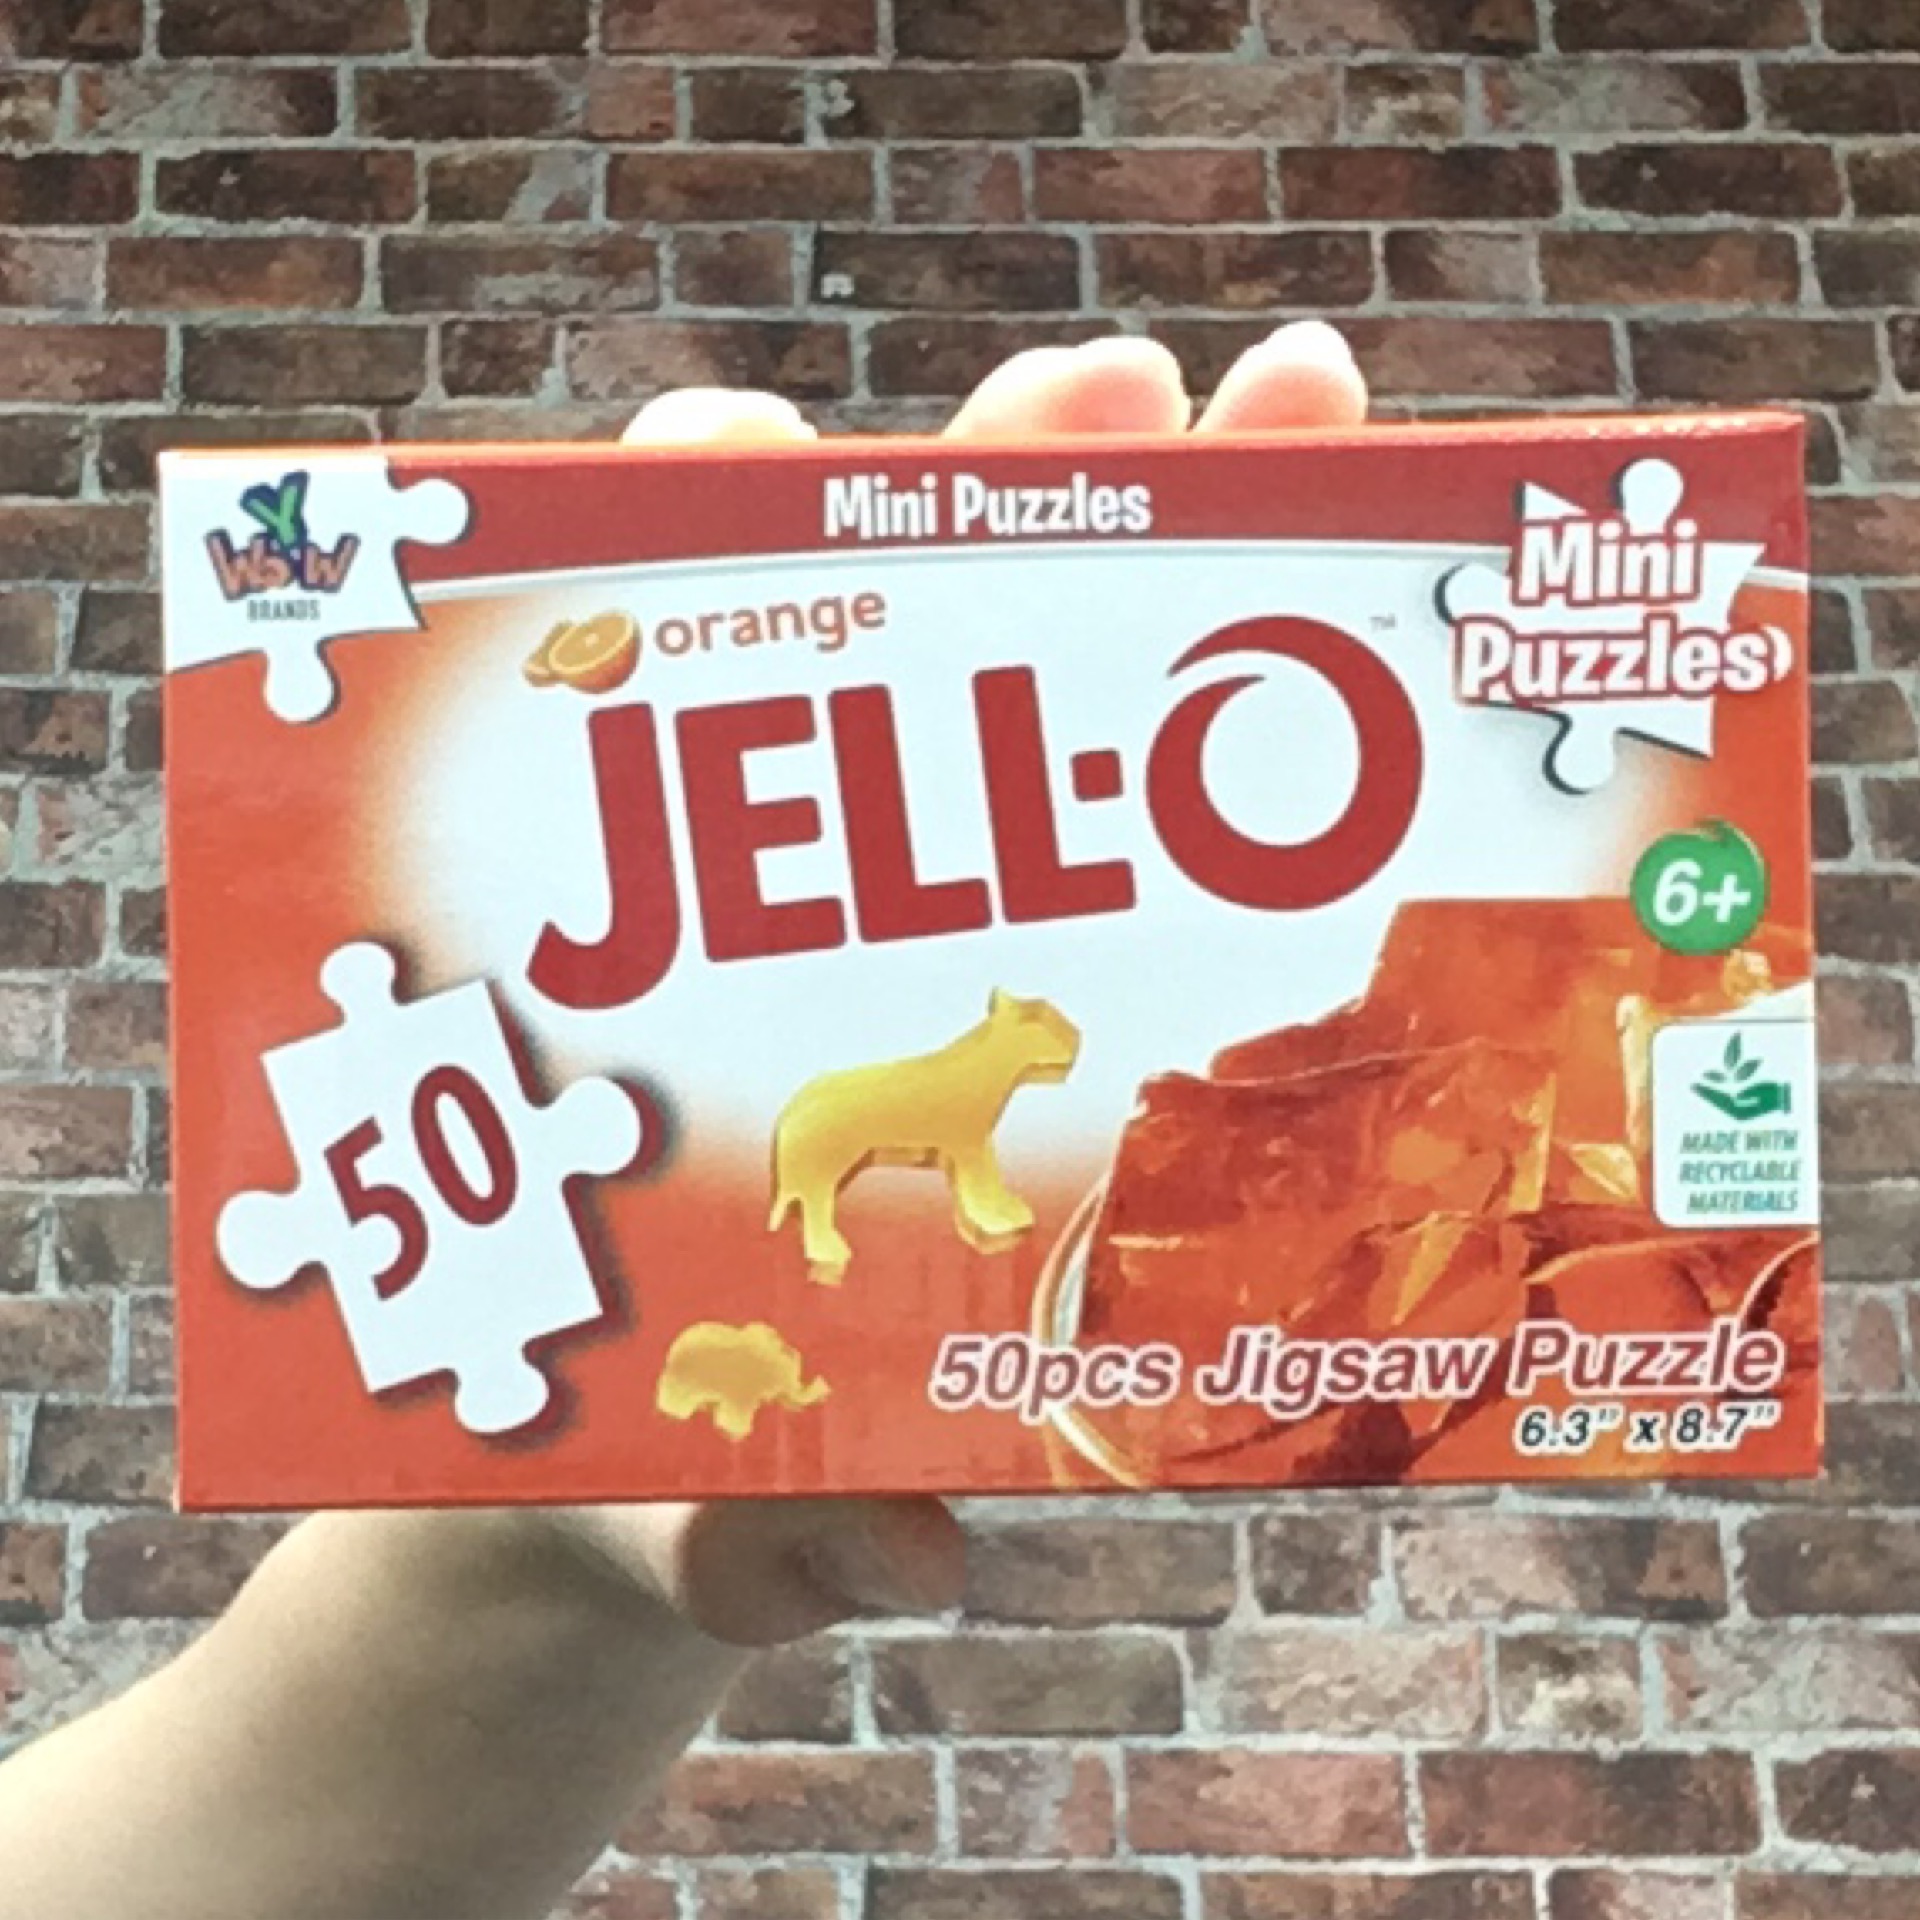 Mini Jello